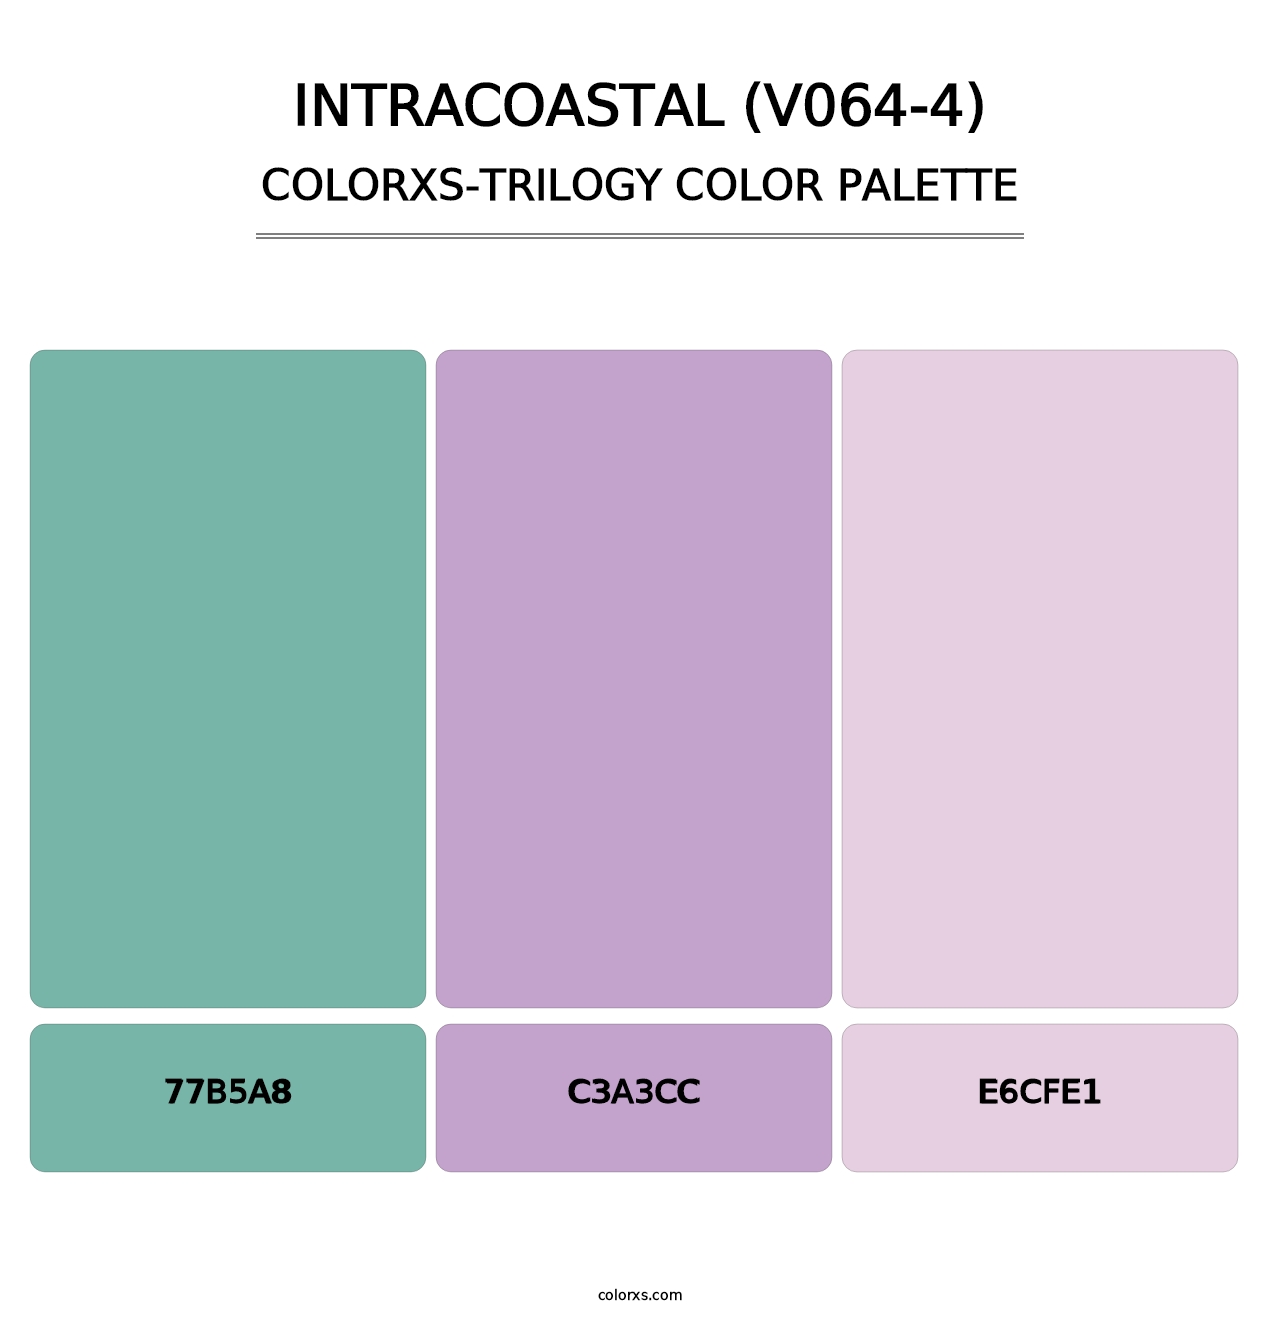 Intracoastal (V064-4) - Colorxs Trilogy Palette